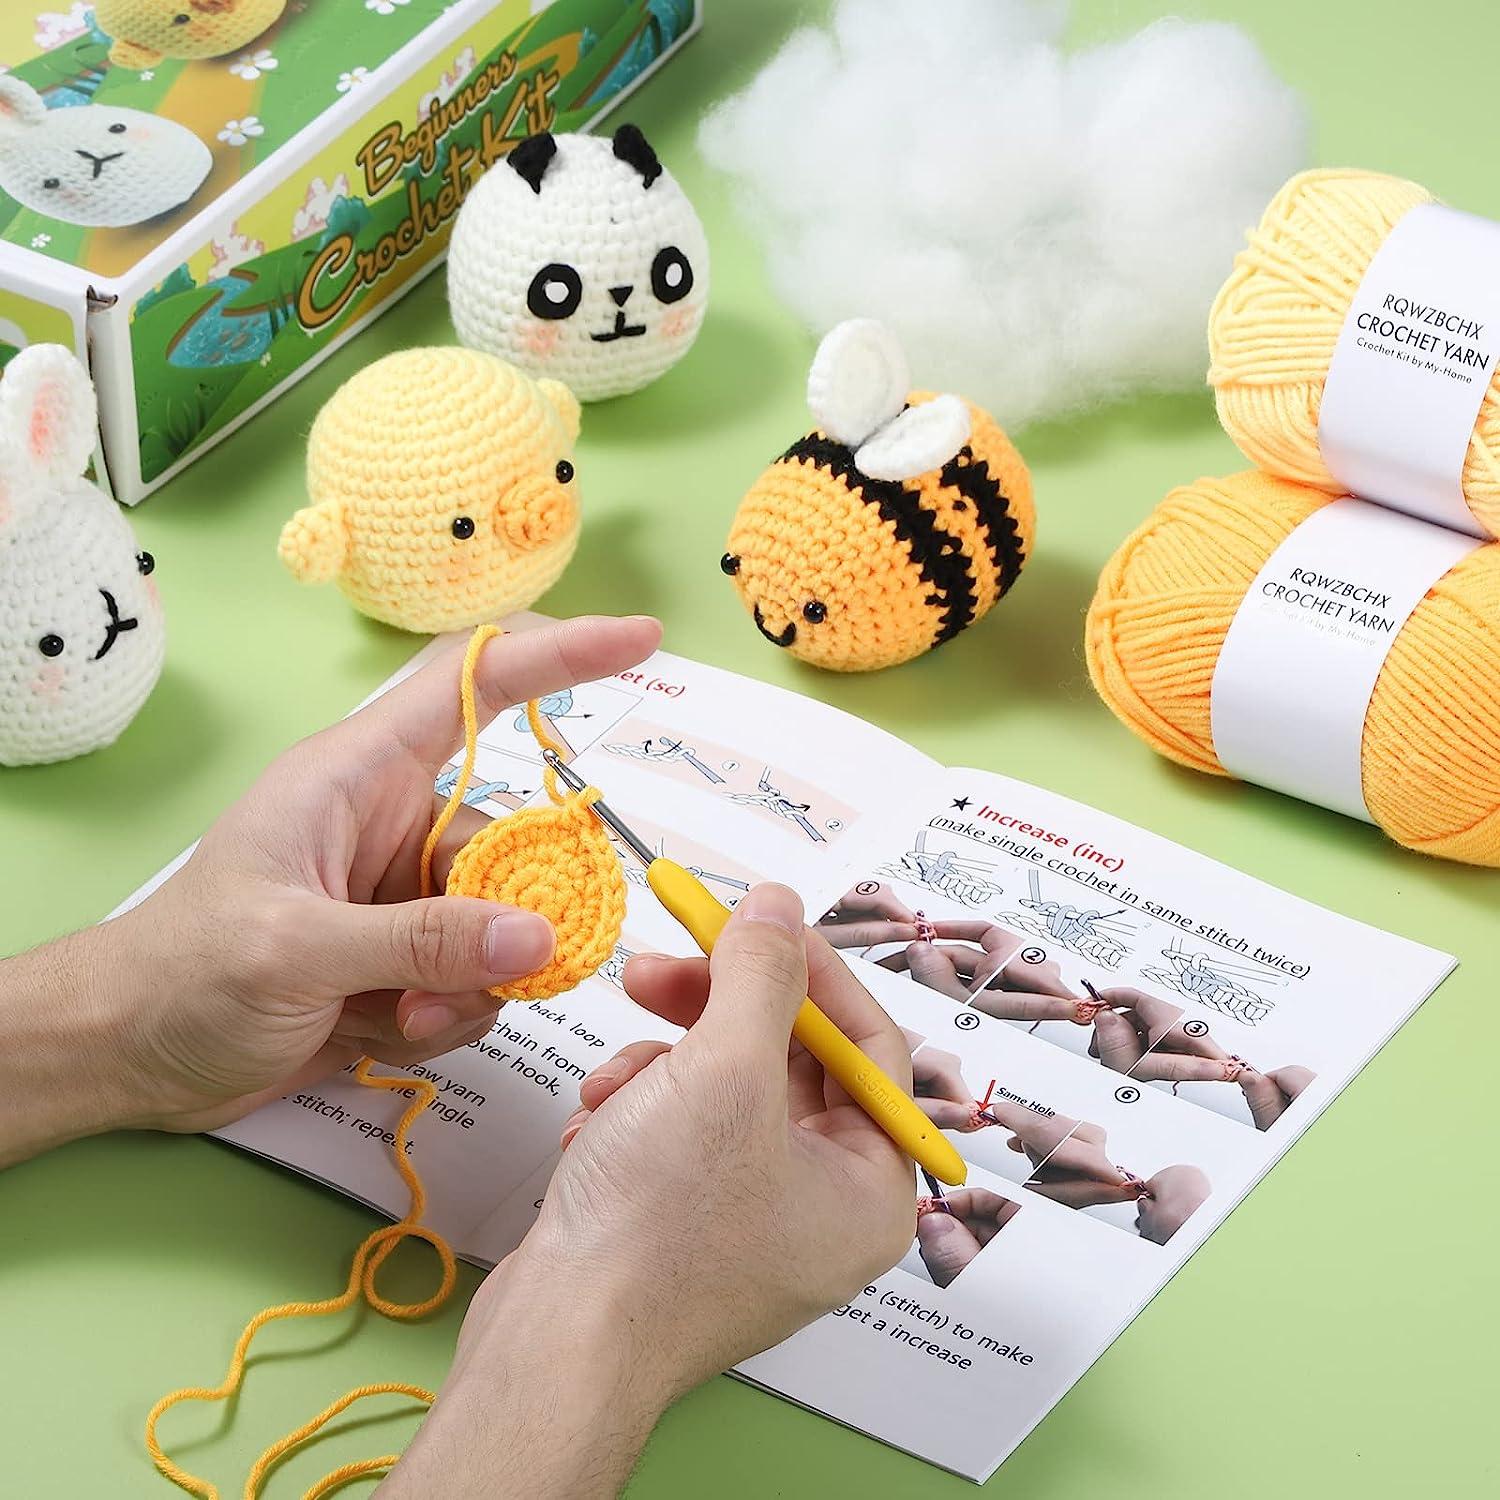 Beginner Bumble Bee Crochet Kit Easy Crochet Starter Kit Crochet Animals  Kit Amigurumi Kit Crochet Gift Animal Crochet Store 